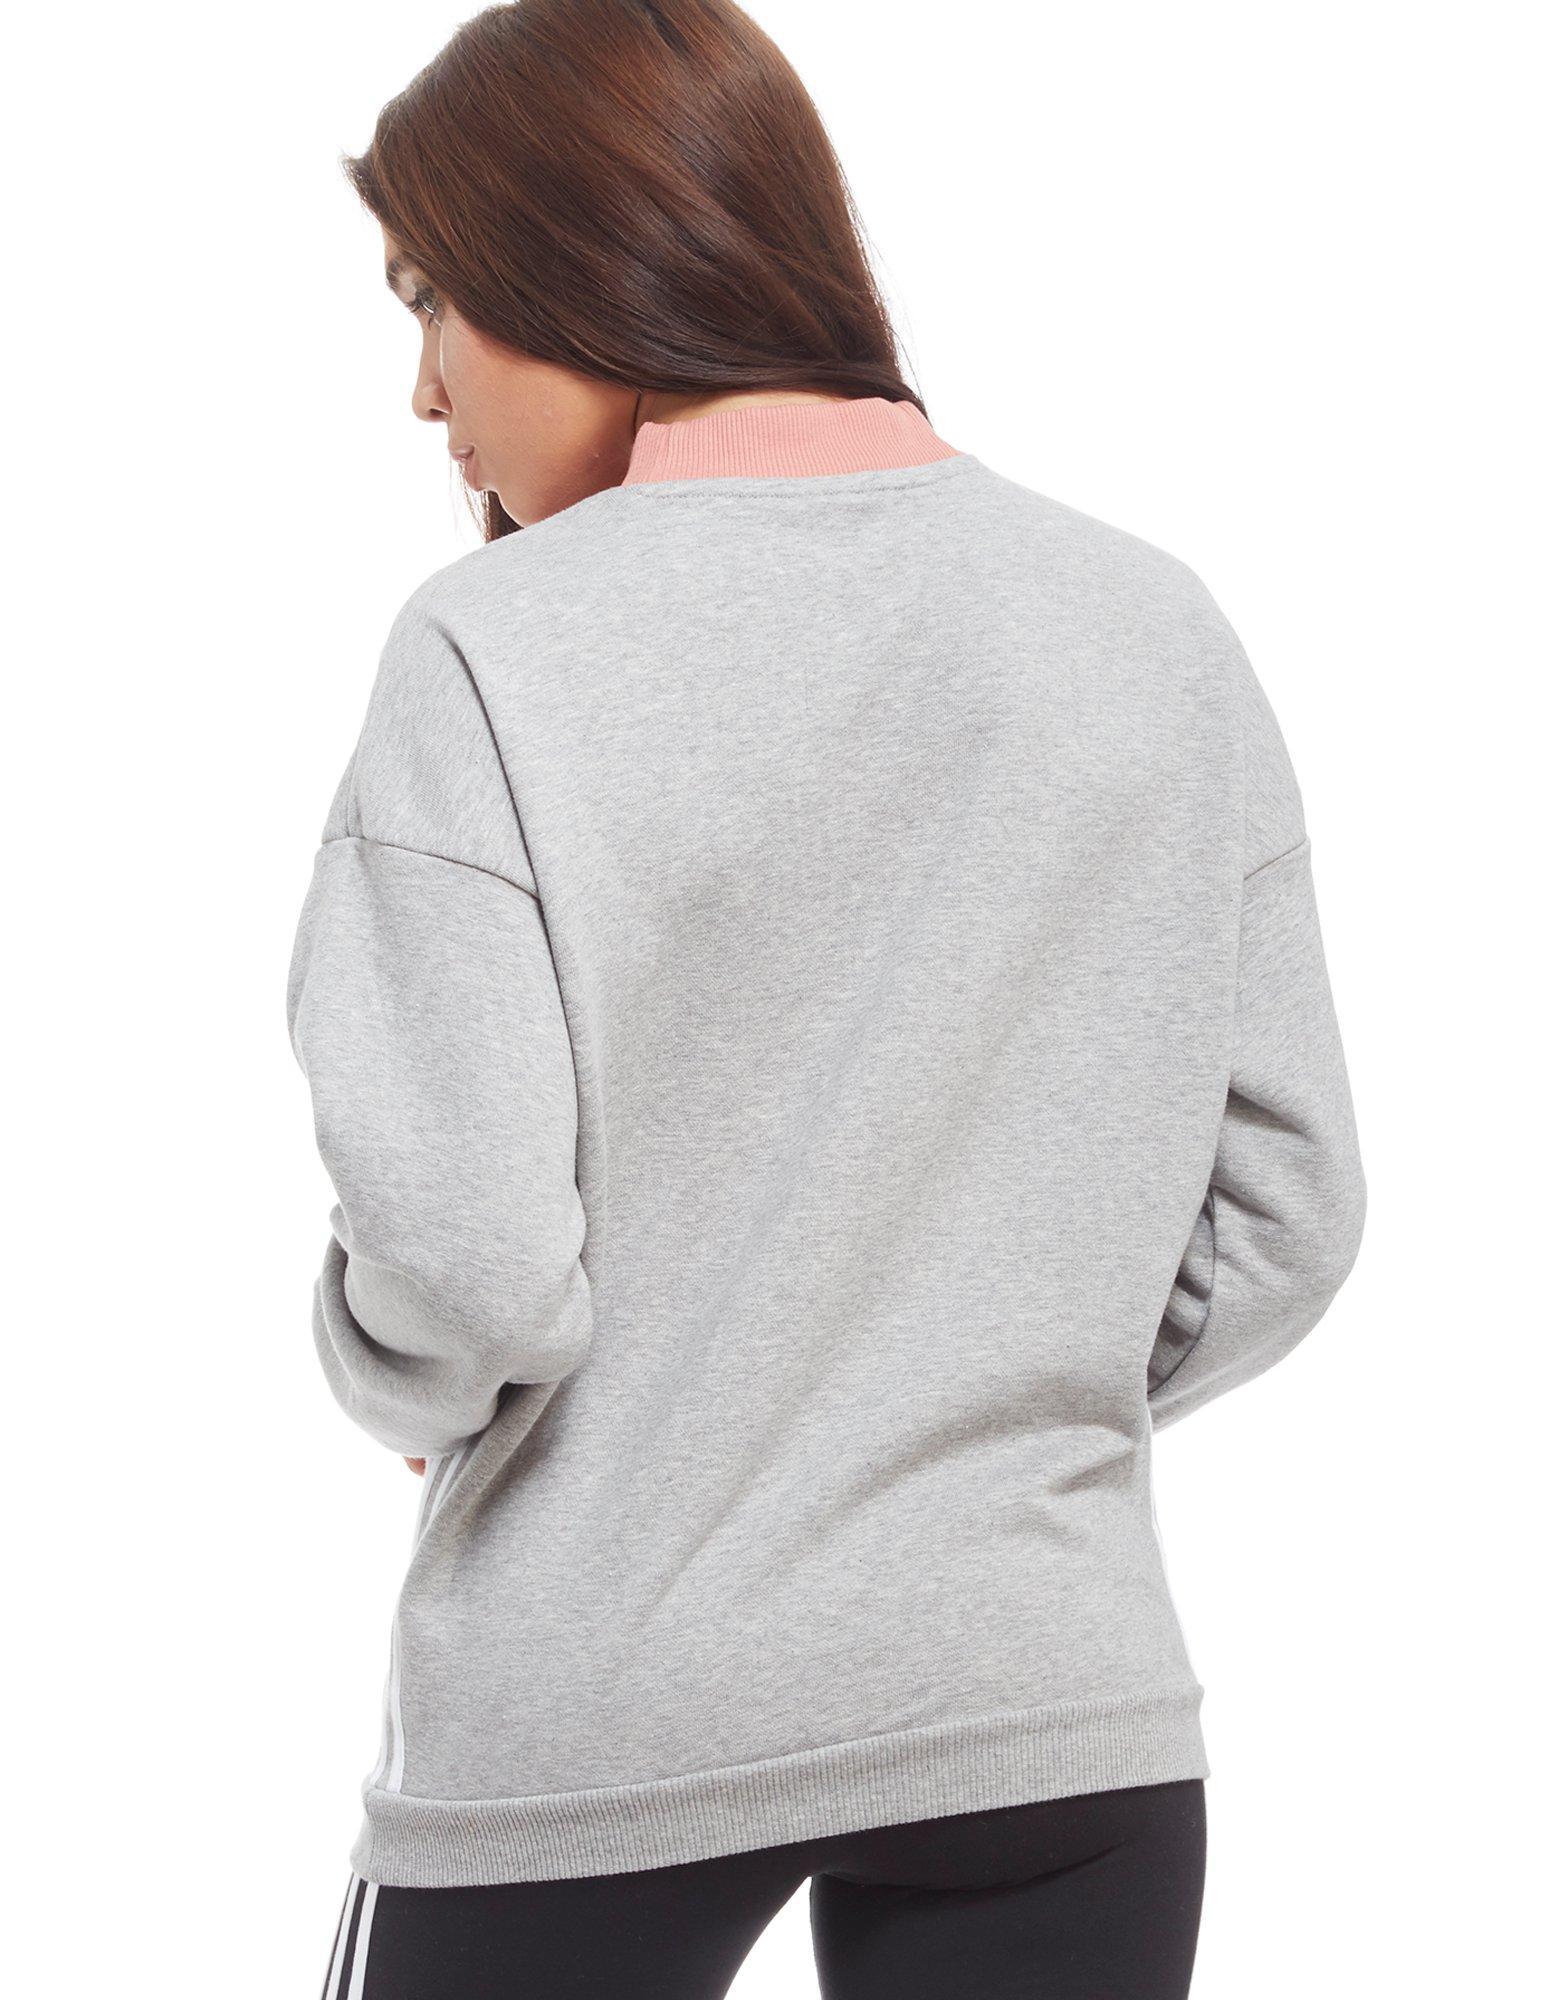 adidas Originals Chevron Sweatshirt in Grey/White/Pink (Gray) - Lyst